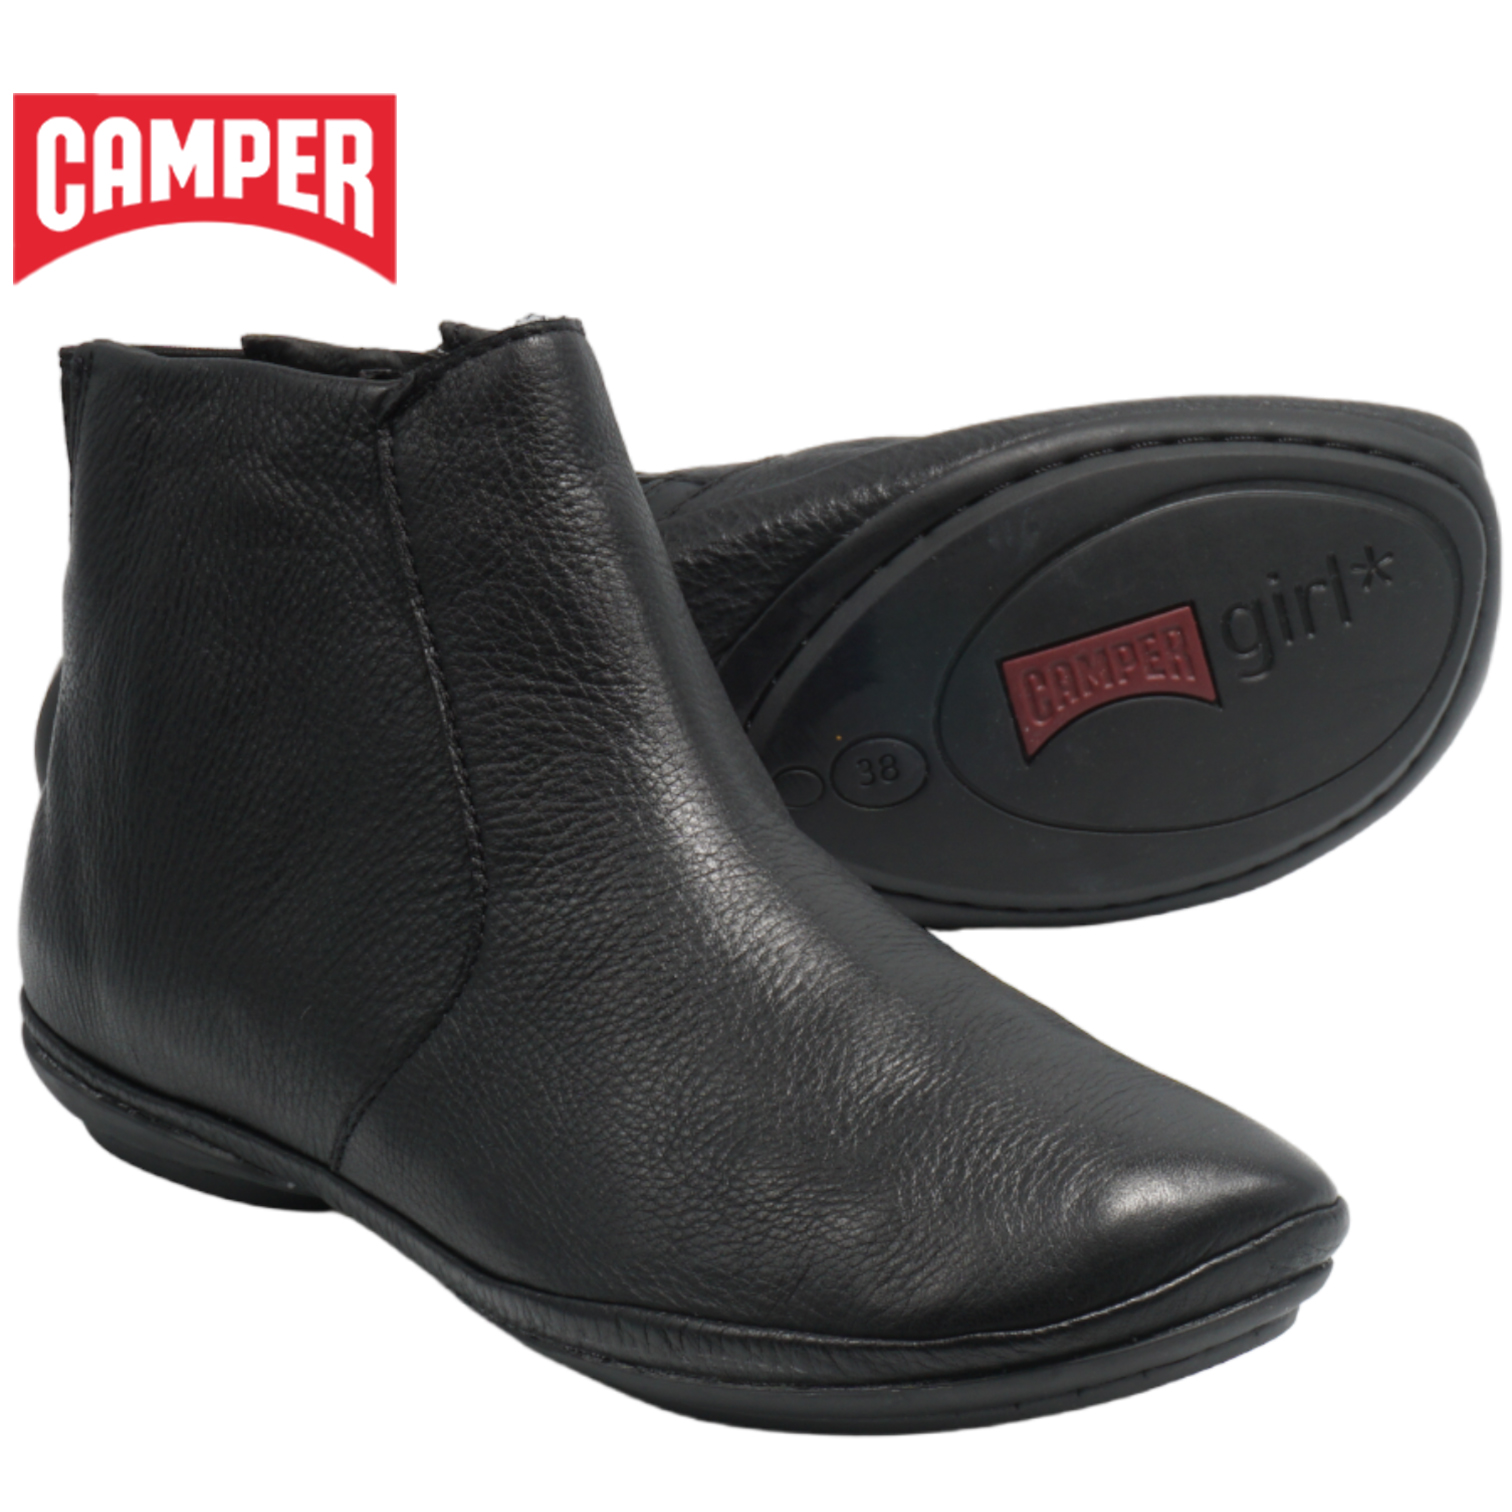 カンペール ライトニナ アンクルブーツ ブラック CAMPER RIGHT NINA K400313-002 レディース ブーツのサムネイル